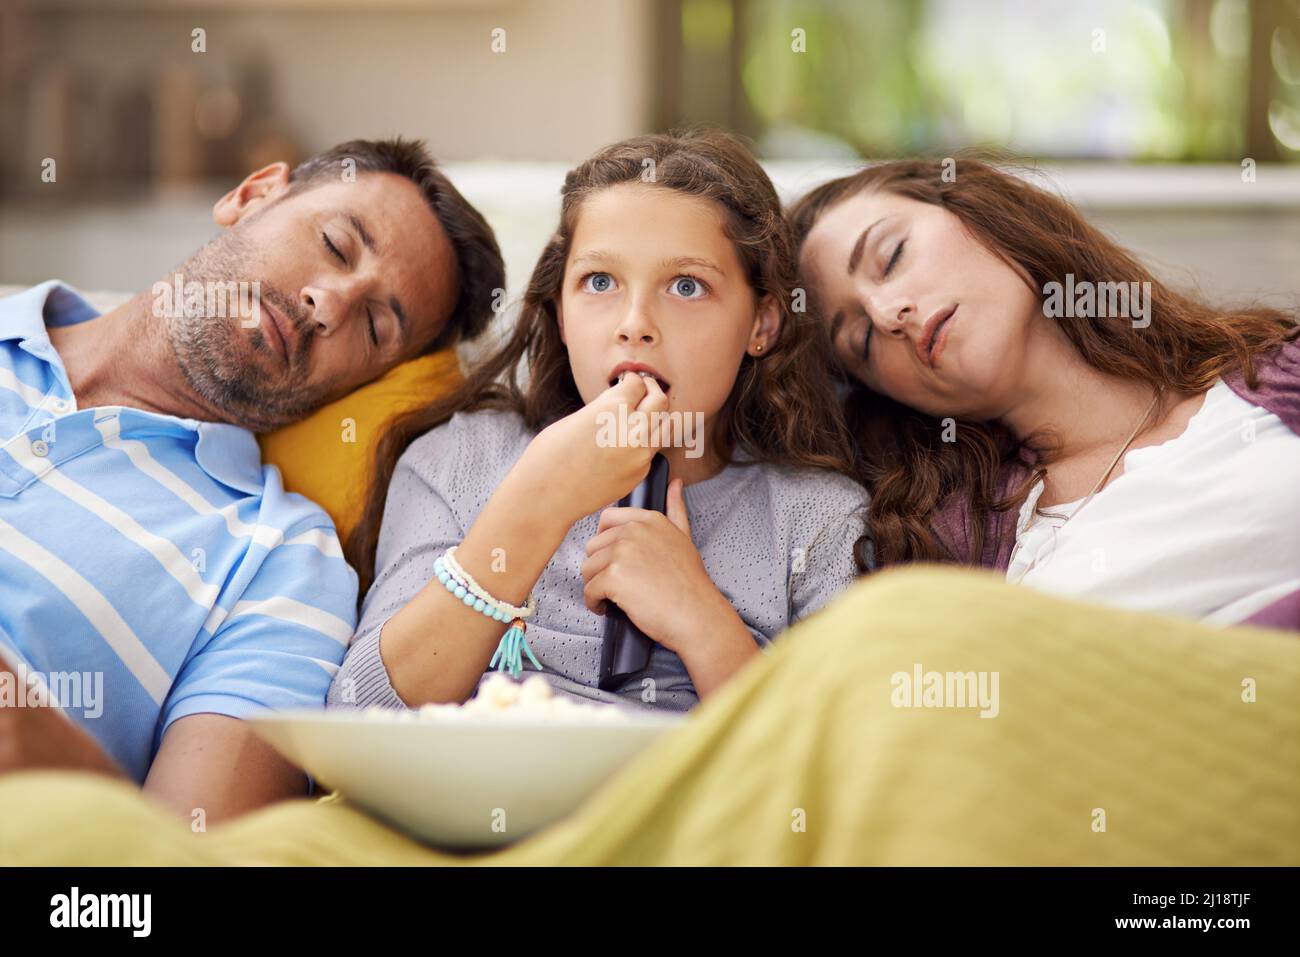 Familienfilmabend. Aufnahme eines Mädchens, das im Wohnzimmer sitzt und einen Film mit ihren Eltern schaut, die neben ihr schlafen. Stockfoto